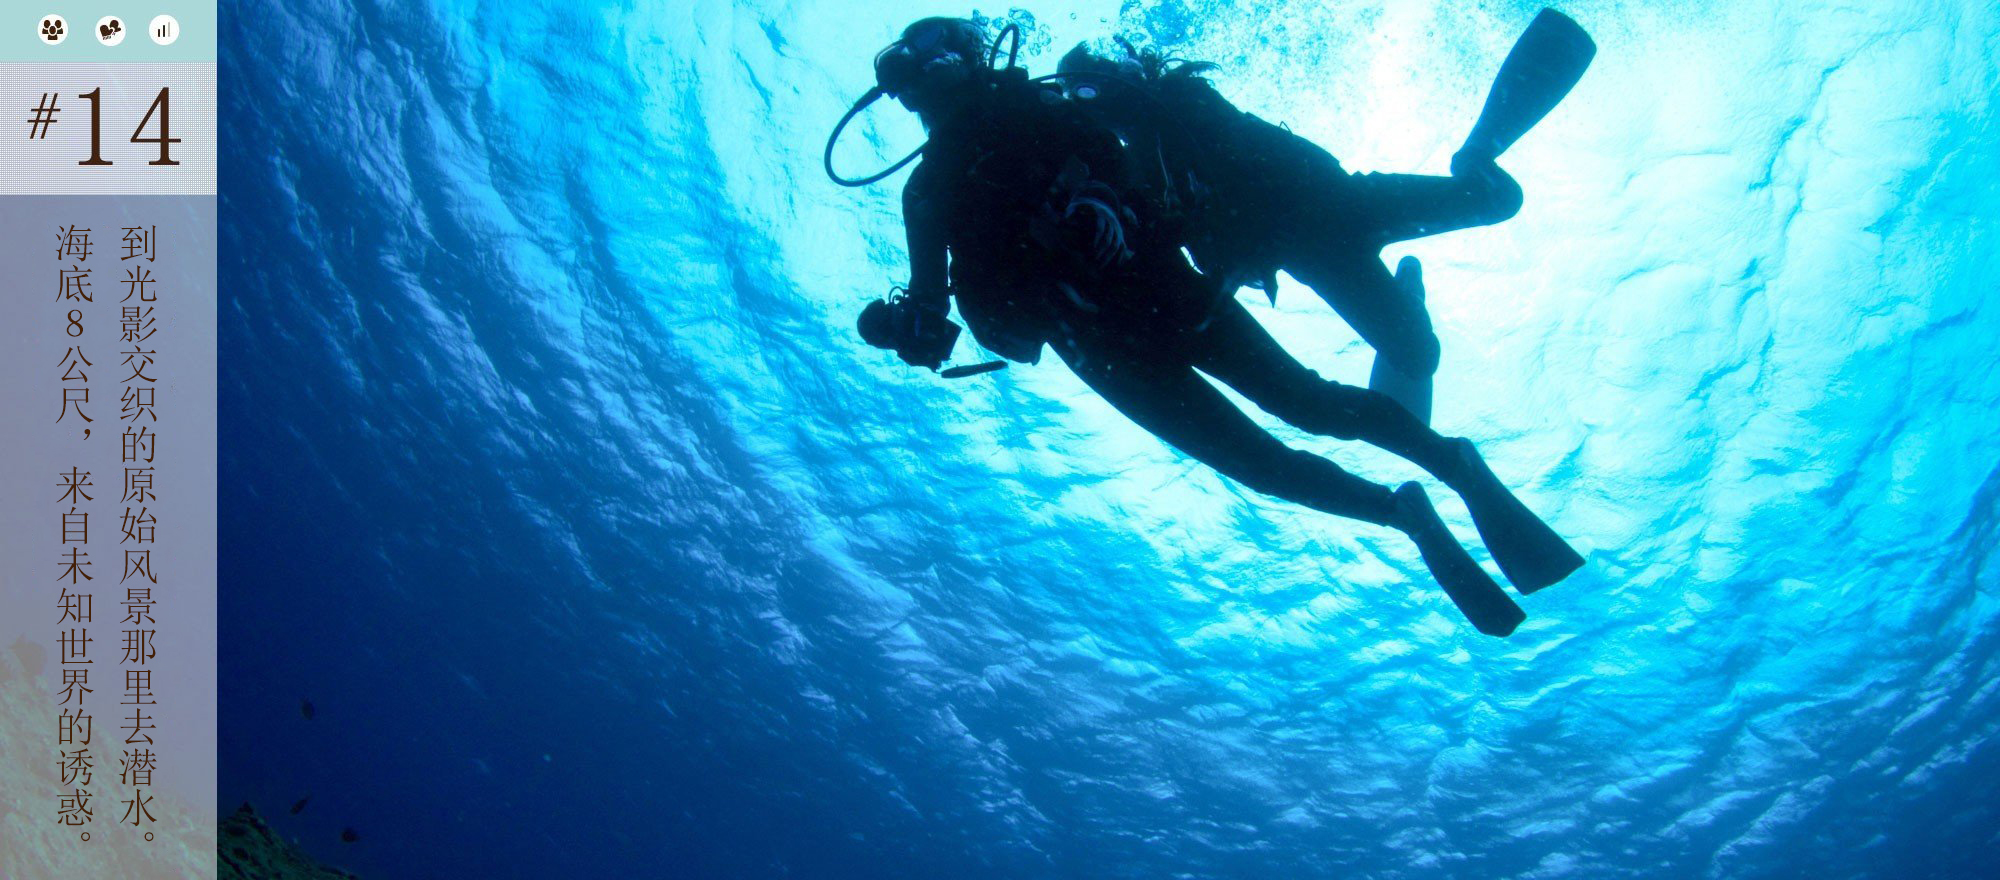 到光影交织的原始风景那里去潜水。海底8公尺、来自未知世界的诱惑。